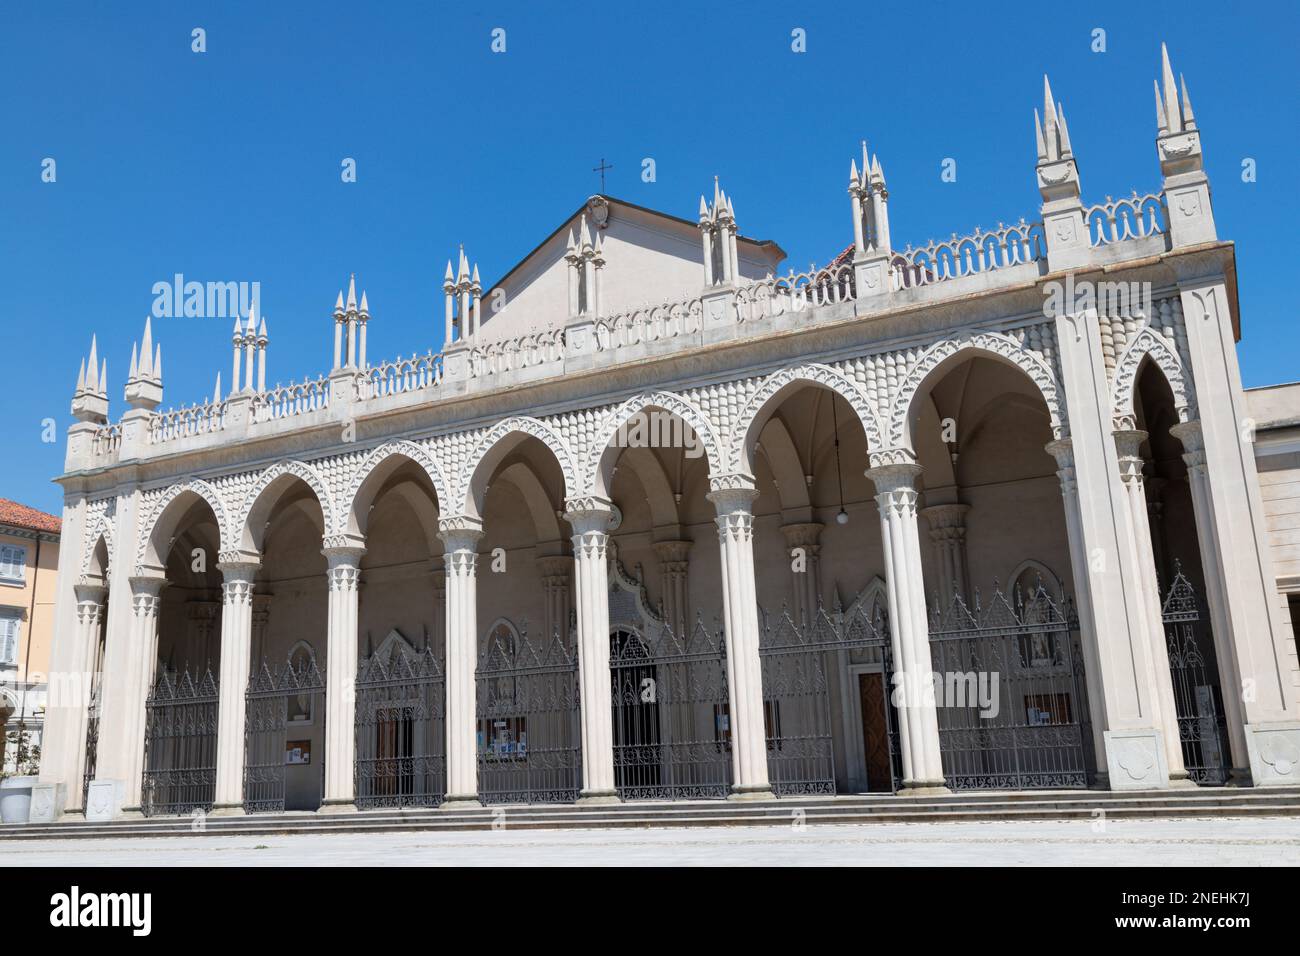 Biella - Piazza Duomo mit dem neogotischen Portal der Kathedrale. Stockfoto